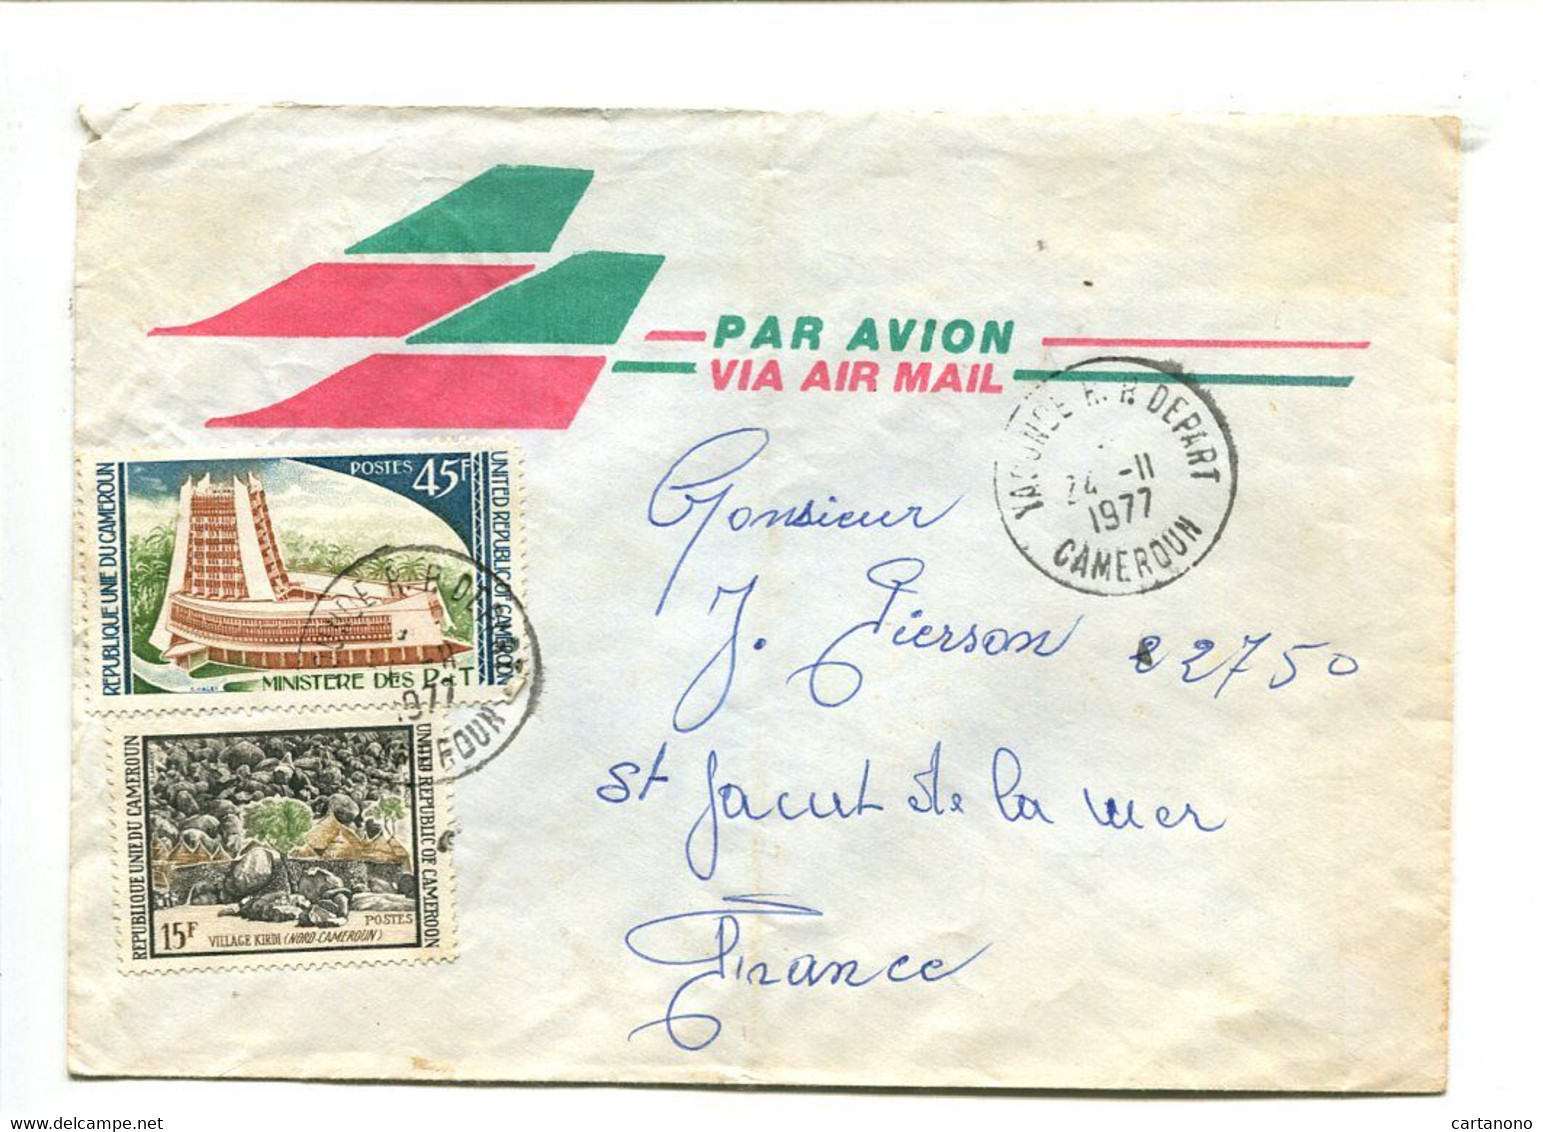 CAMEROUN Yaoude R.P. Départ 1977 - Affranchissement Sur Lettre Par Avion - Camerun (1960-...)